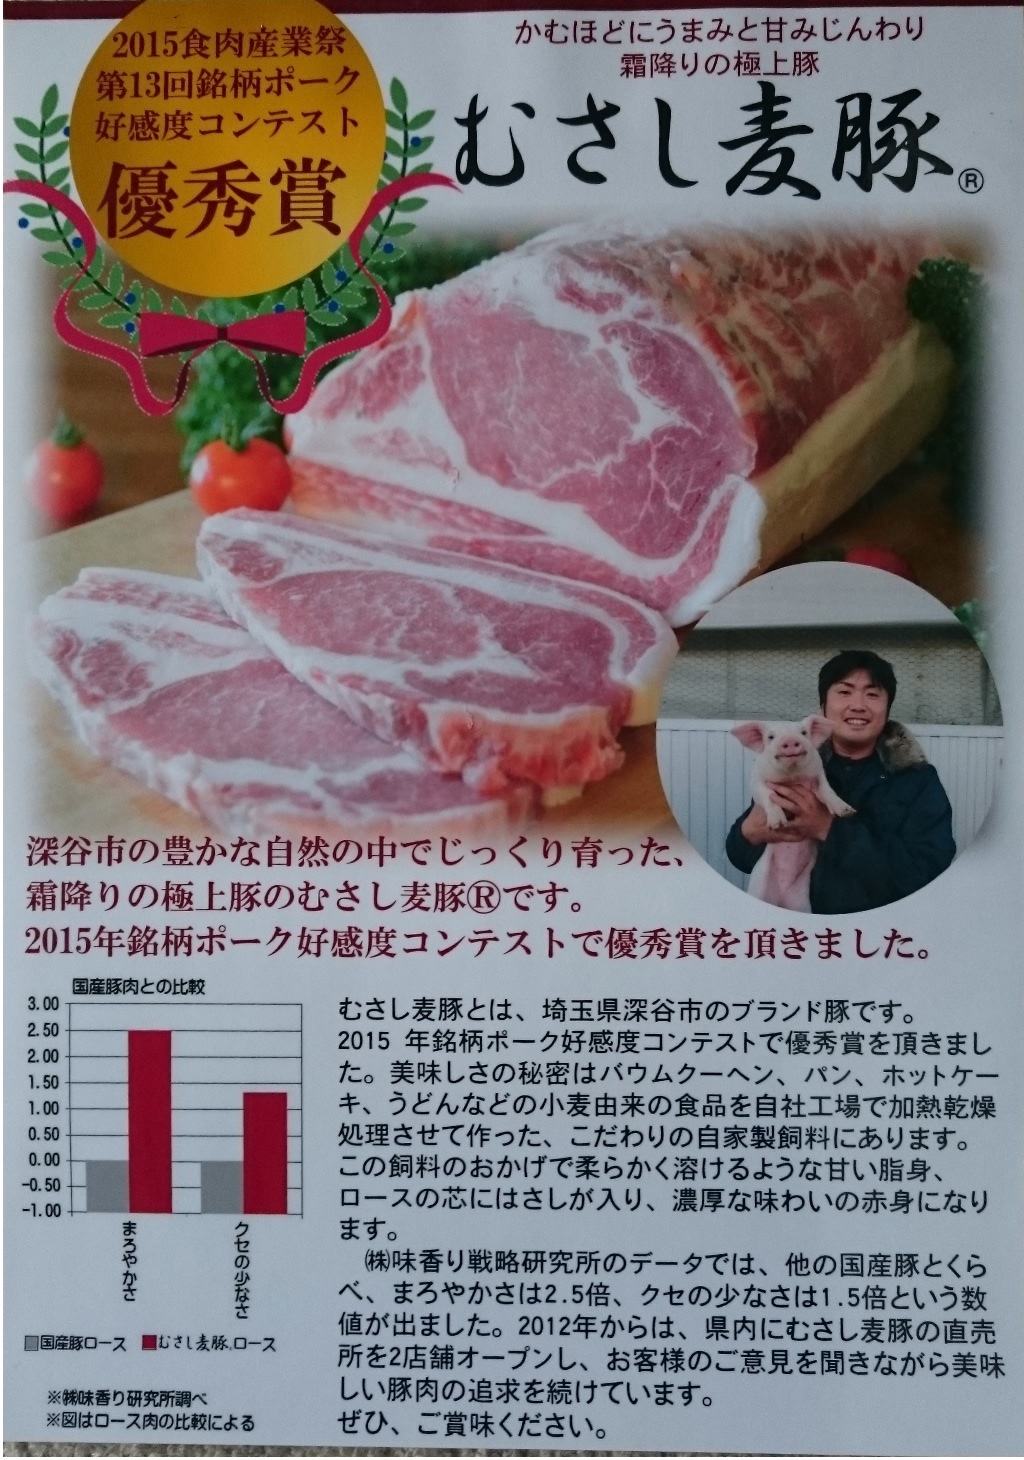 鶴ヶ島直売所で「むさし麦豚」販売開始しました。